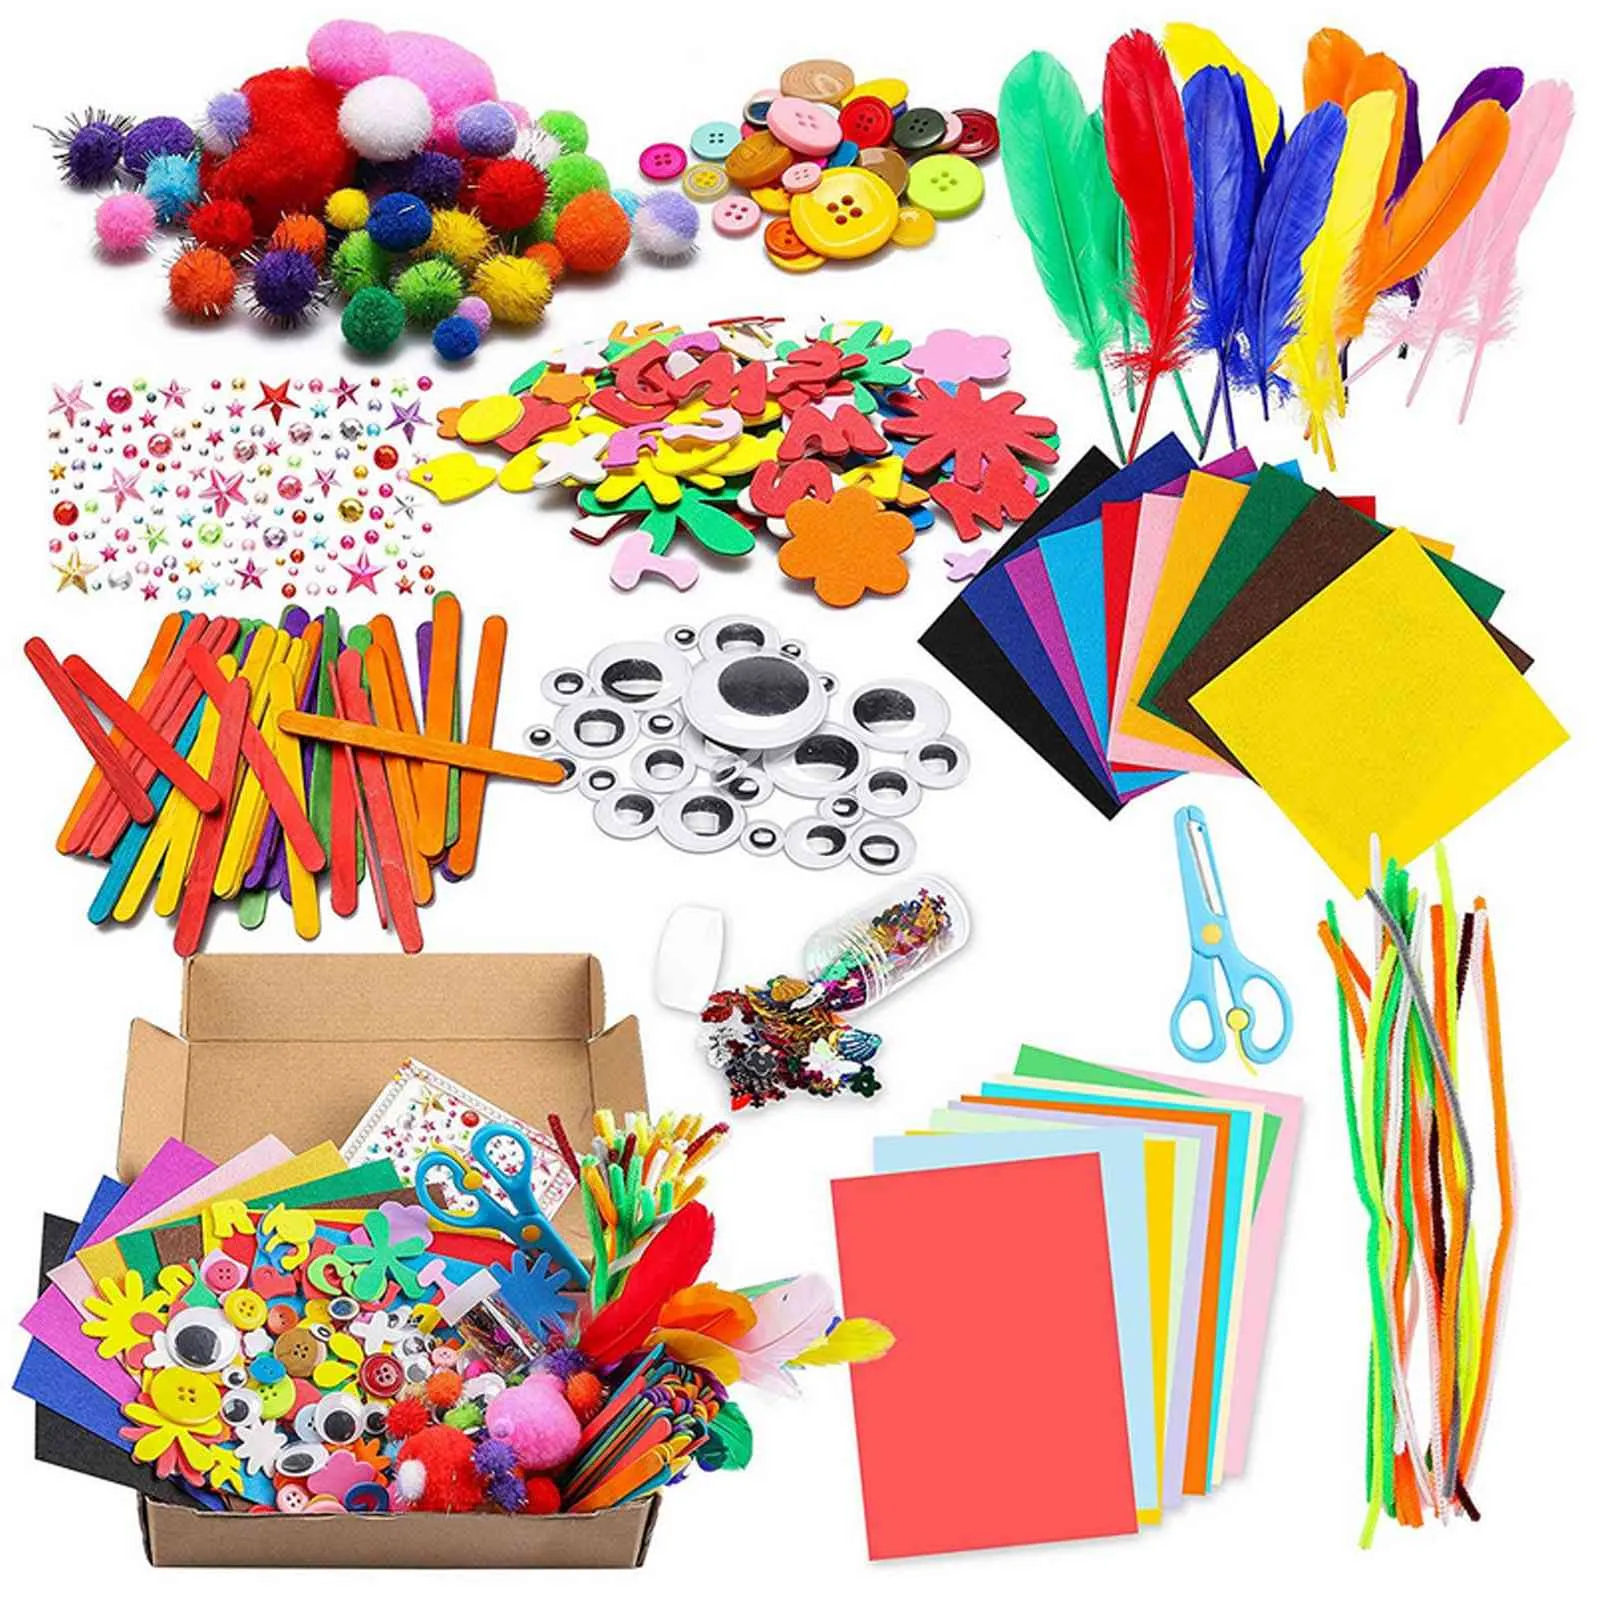 Le kit de fournitures d'artisanat d'arts de bricolage pour enfants comprend des papiers de feutre de couleur pour les yeux